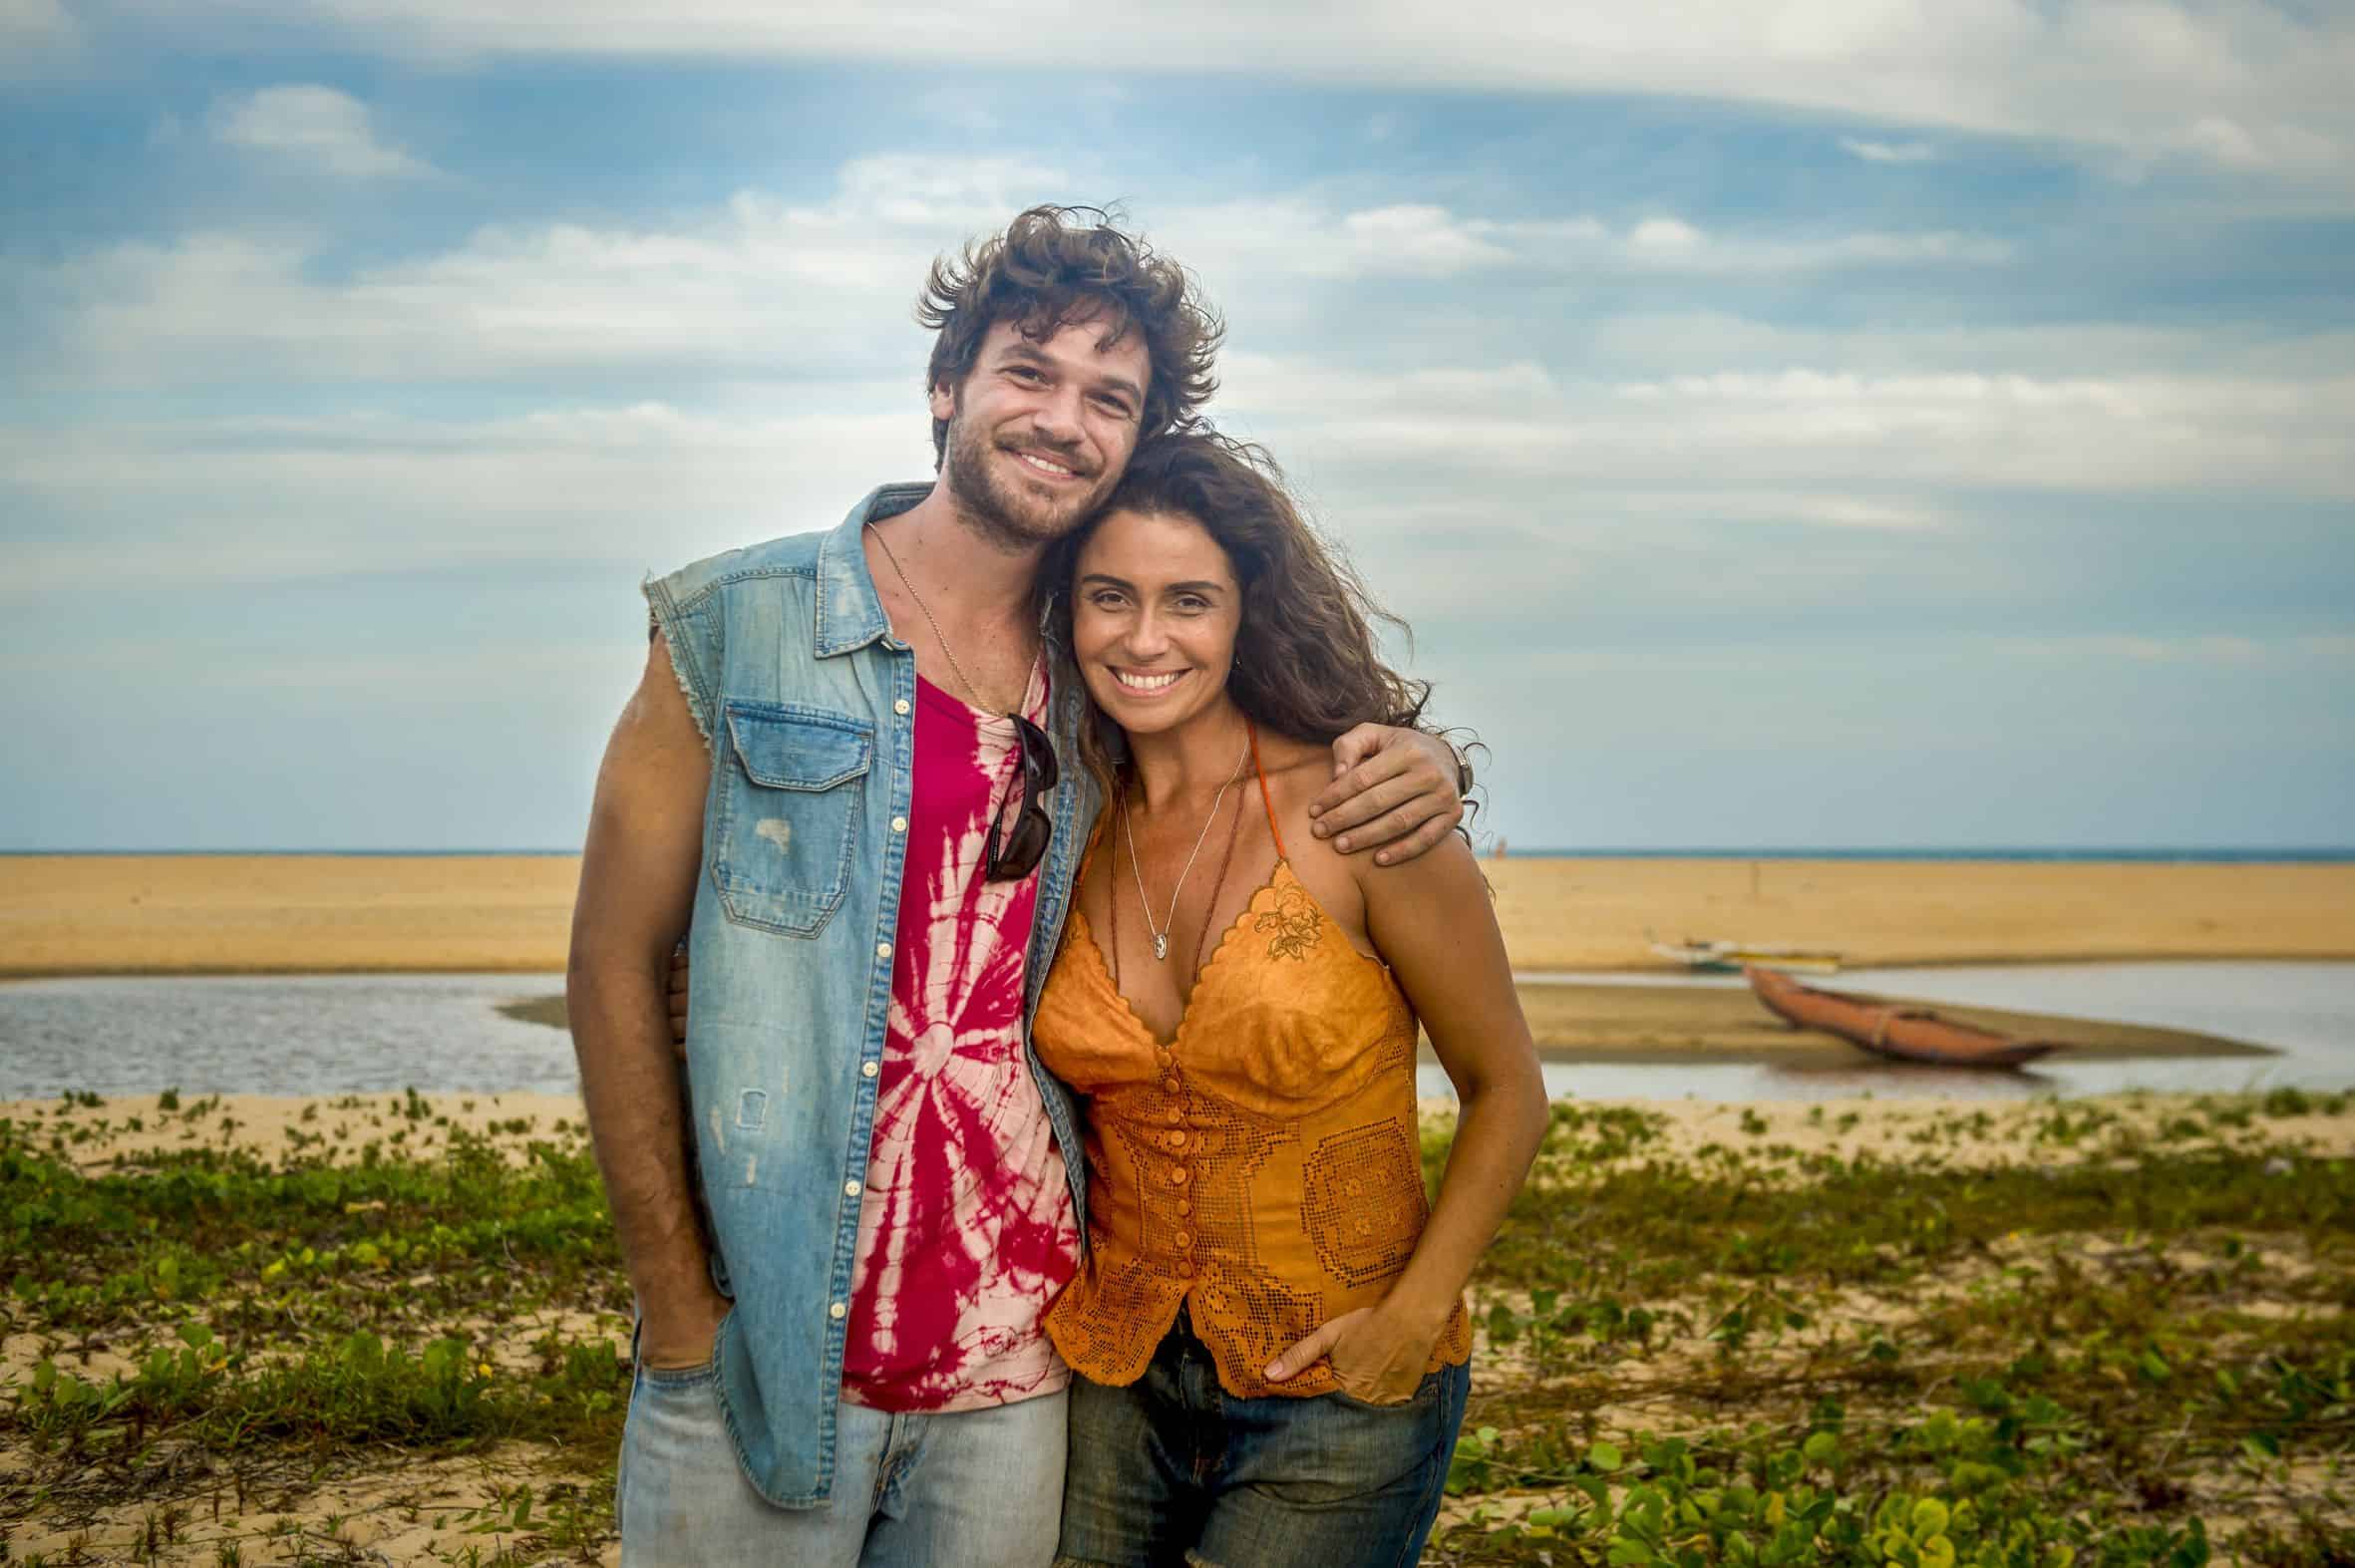 Audiência da TV: Em 10 anos, estreia de “Segundo Sol” supera 6 antecessoras e empata com 5